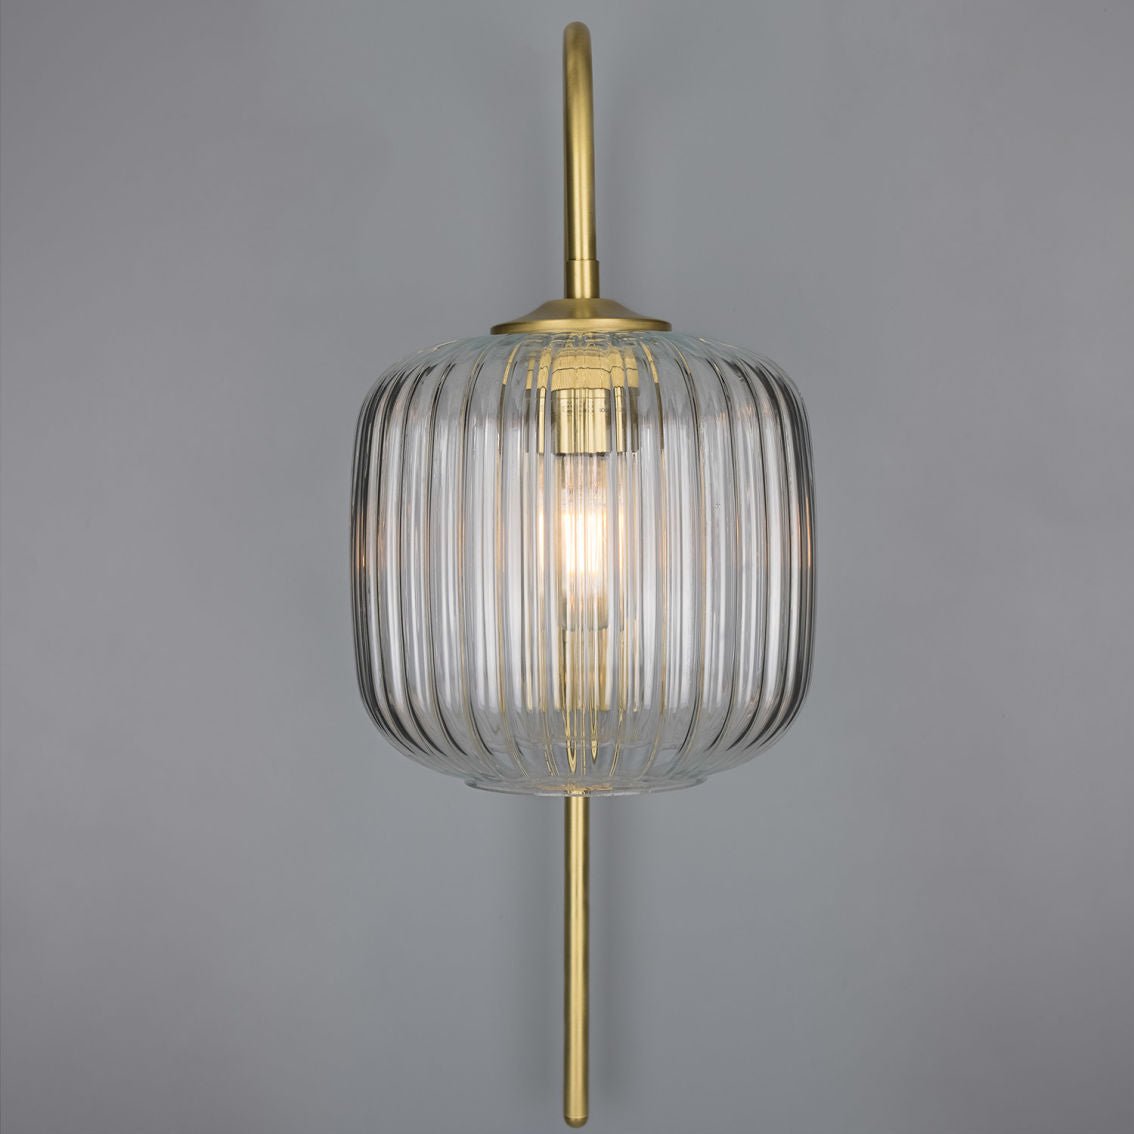 The Astoria wall light has a brass swan neck lamp holder.